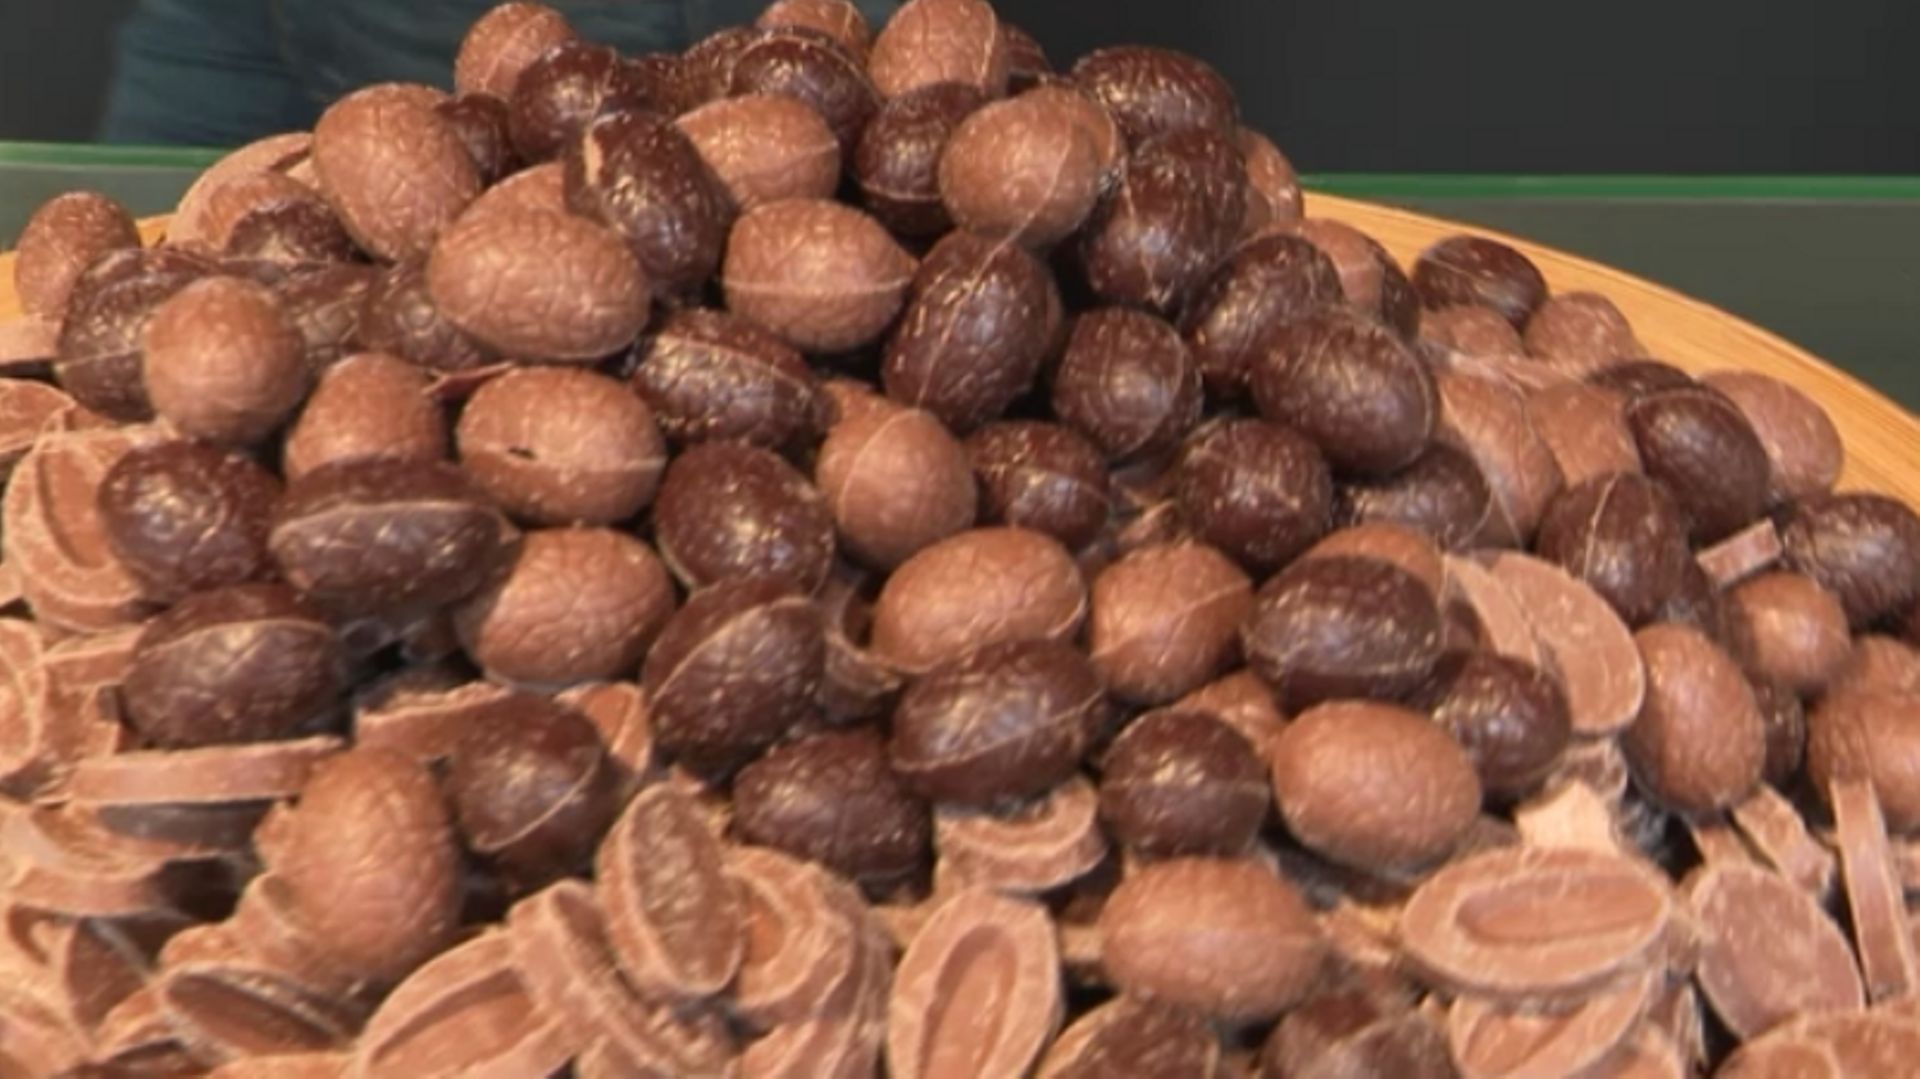 Sur un an, le Belge mange 5 kilos de chocolat, soit l'équivalent de ce plateau.